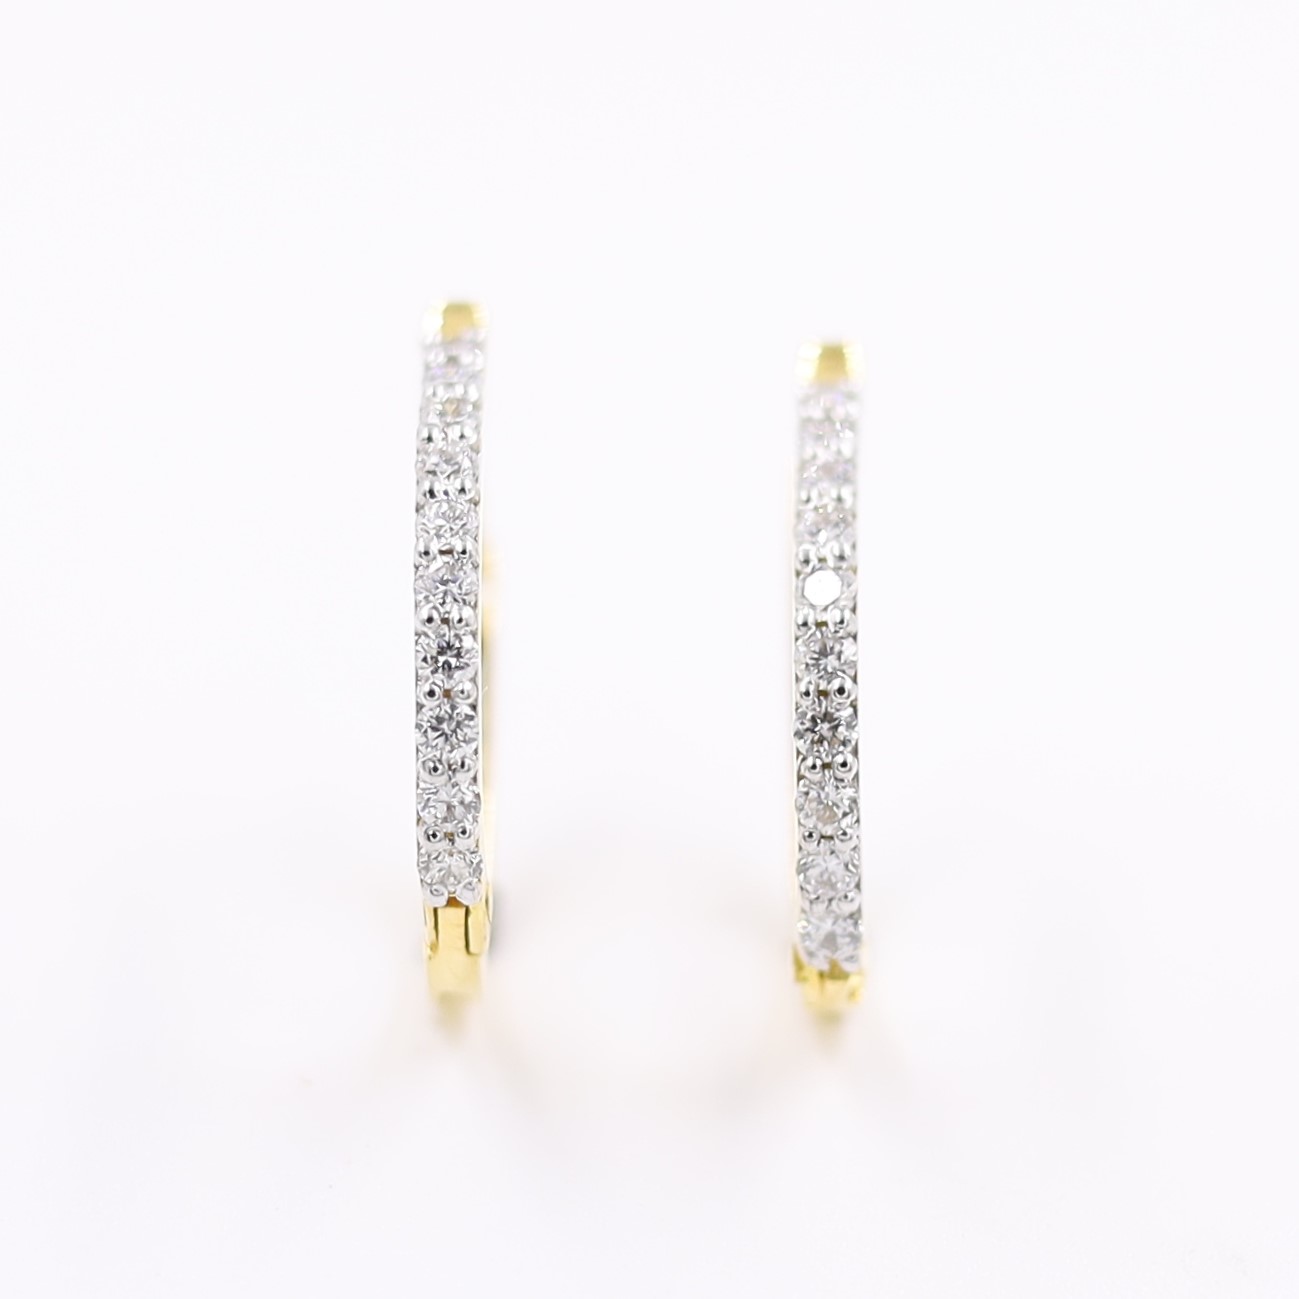 Contemporary 18KT Single Line Diamond Hoop Earrings For Party Wear